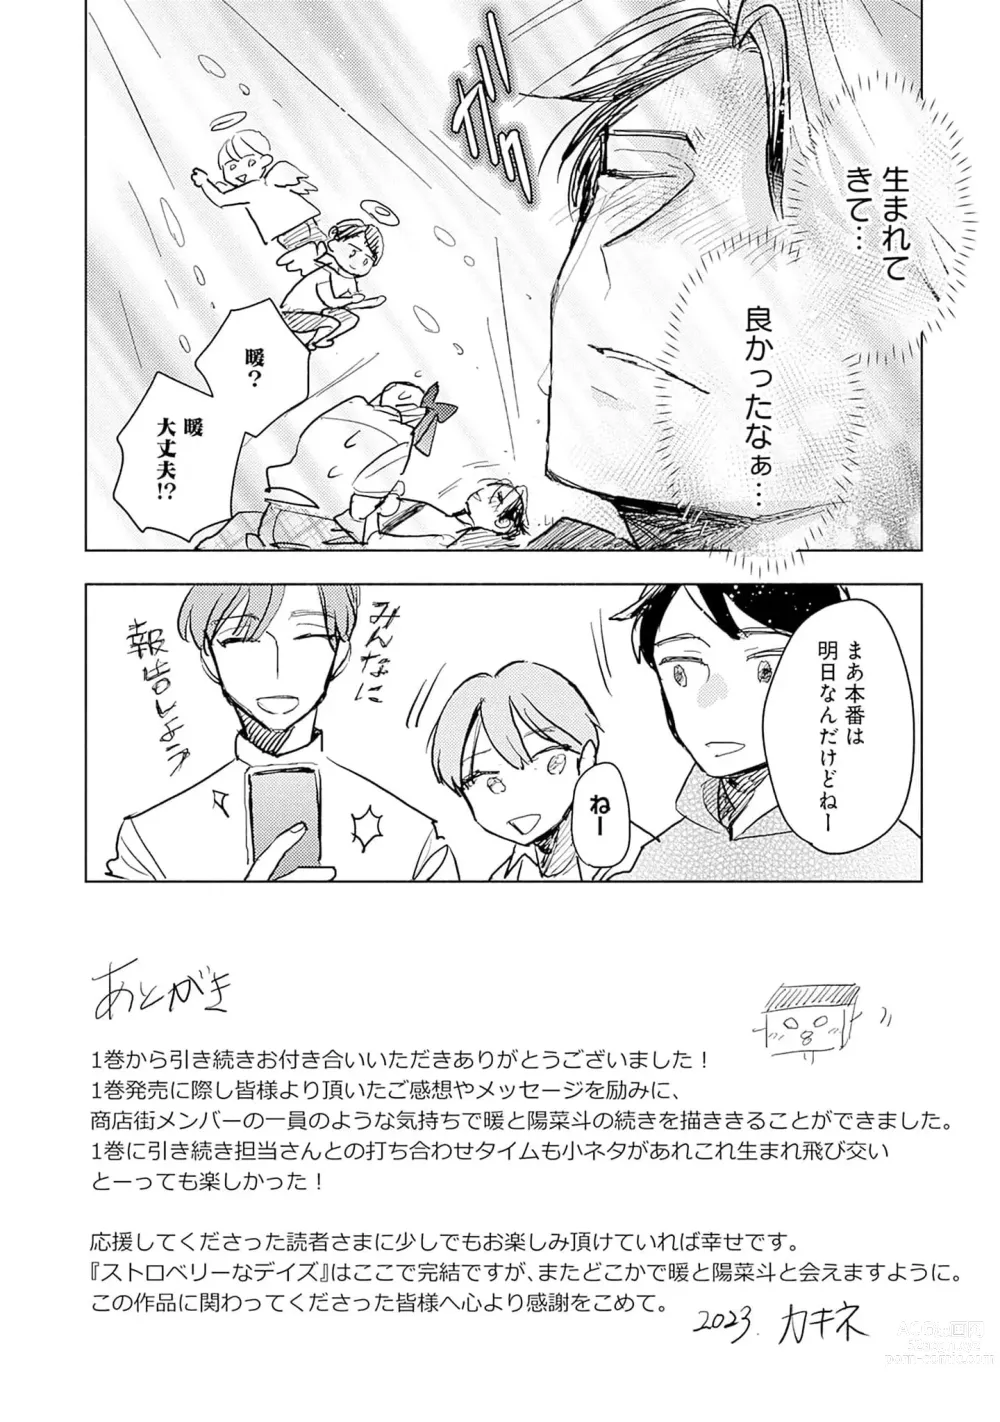 Page 177 of manga Strawberry na Days 2